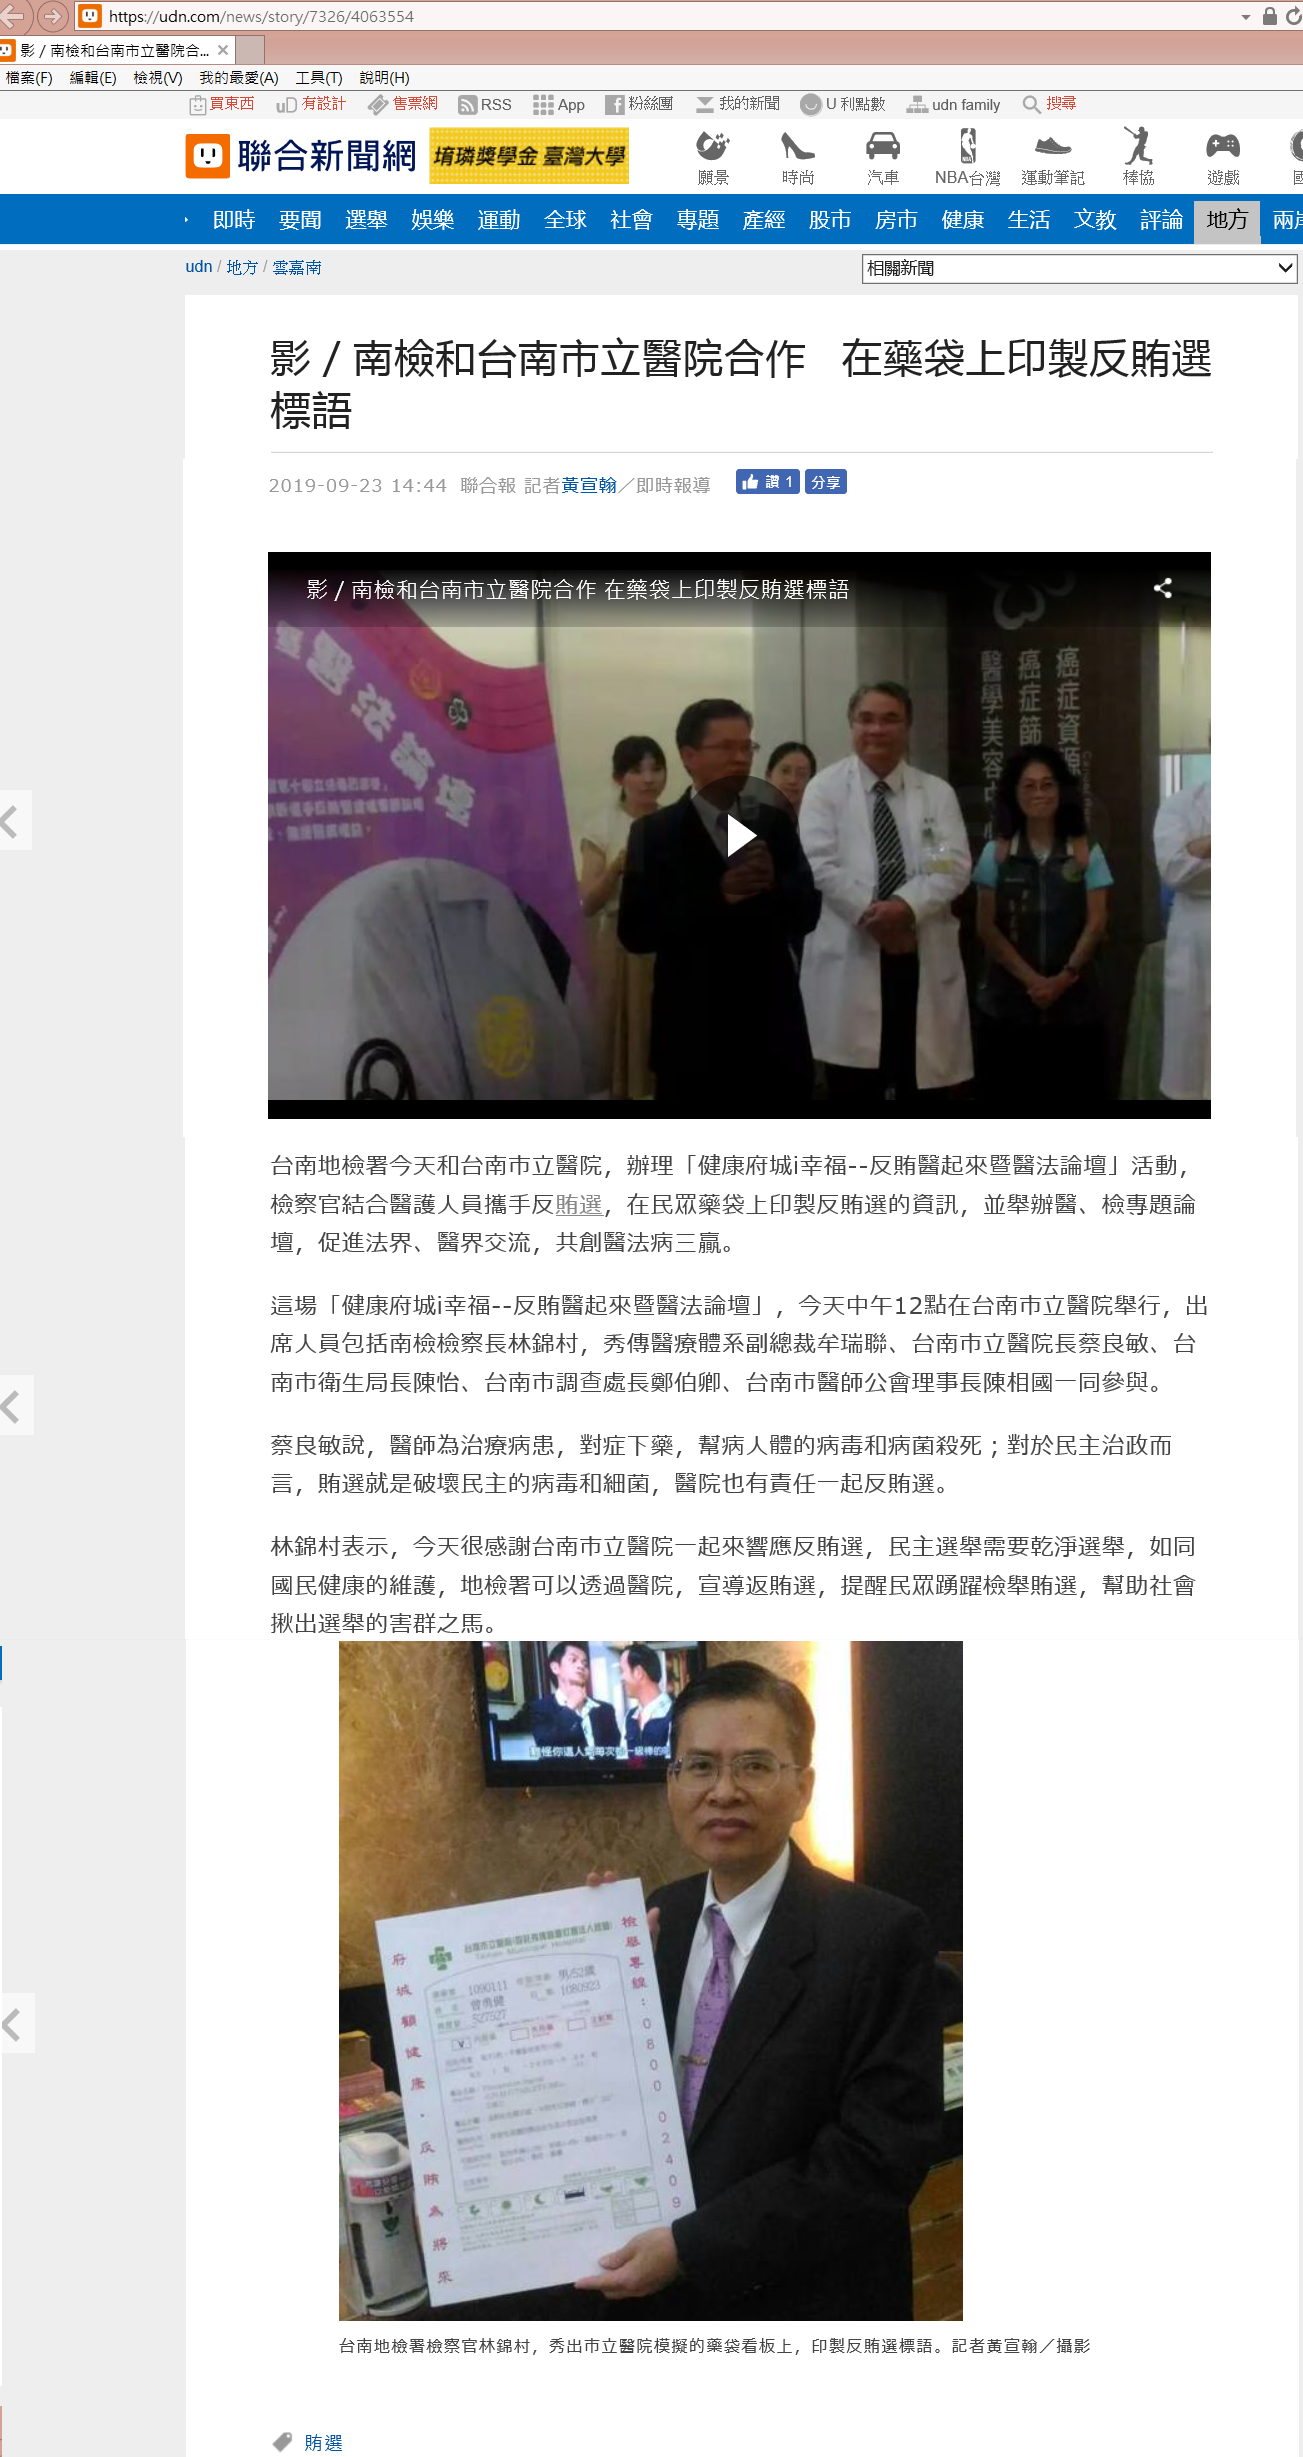 108.09.23-聯合新聞網電子報-影／南檢和台南市立醫院合作 在藥袋上印製反賄選標語